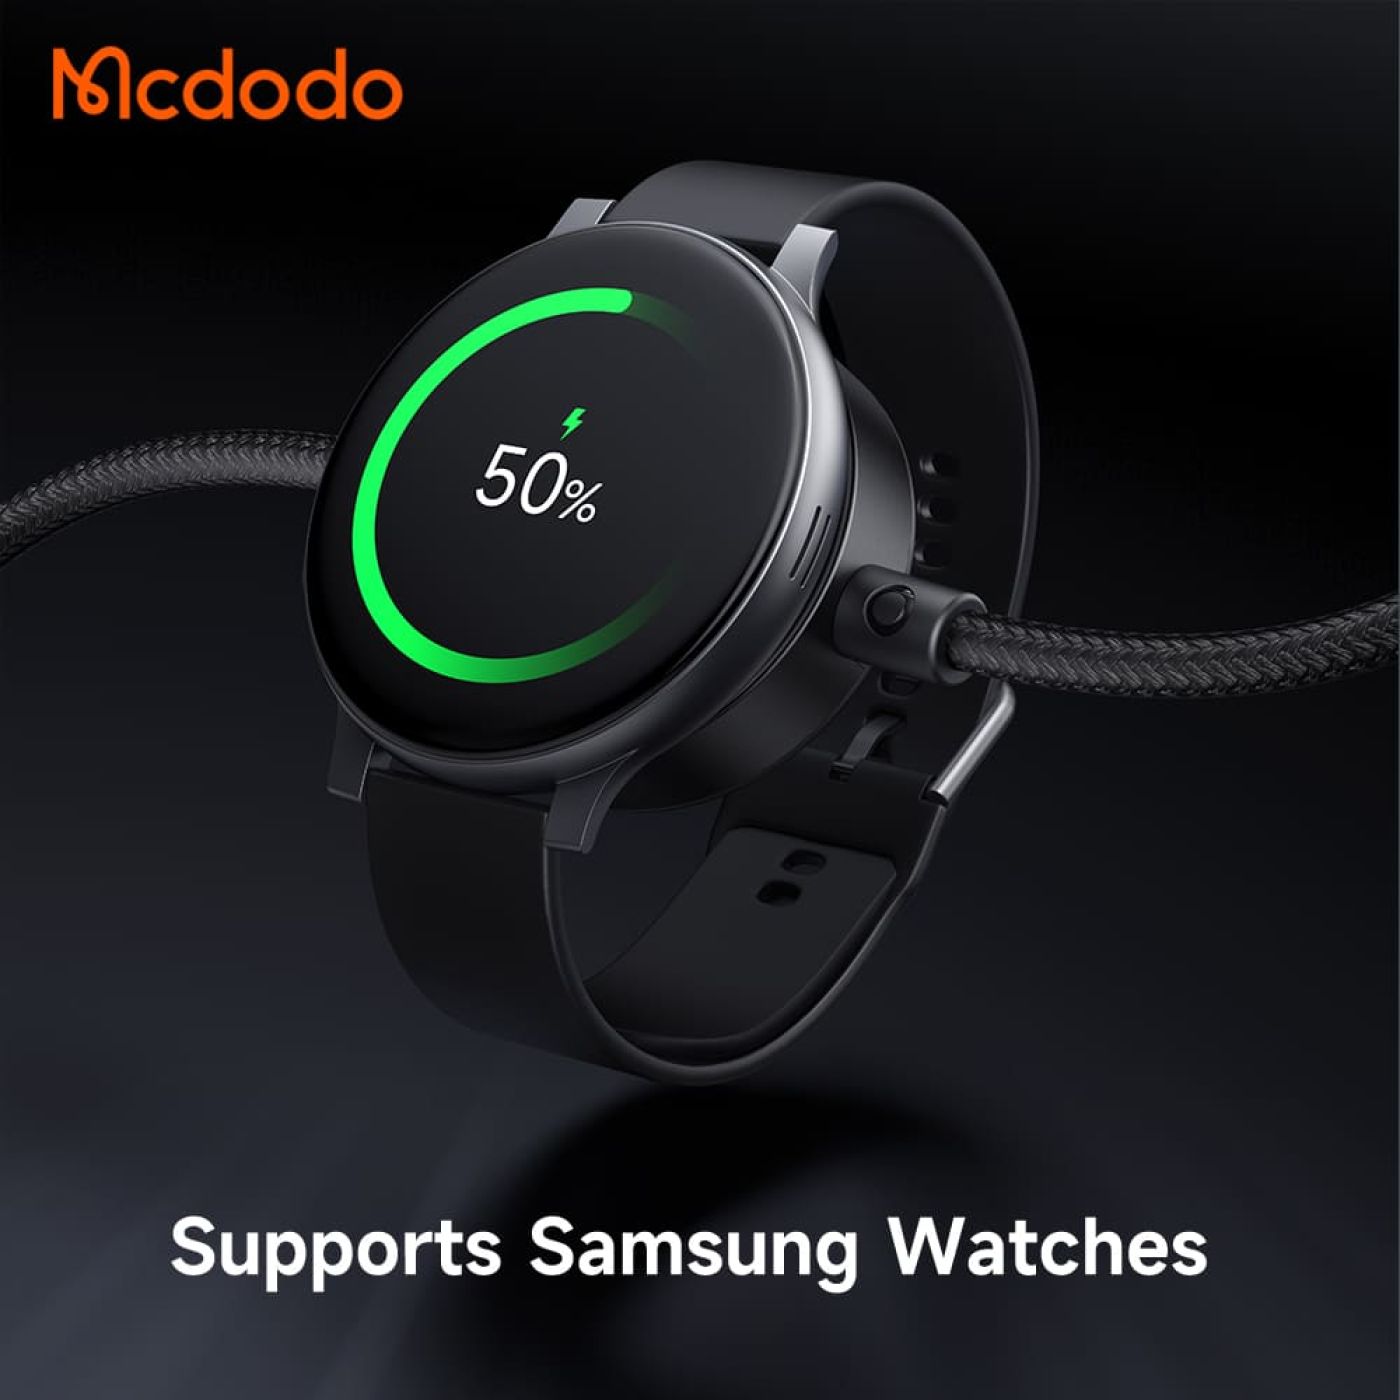 Cáp Sạc Đa Năng Mcdodo 2 in 1 PD + Magnetic Wireless Charging Cable (Tương Thích Samsung Watch)